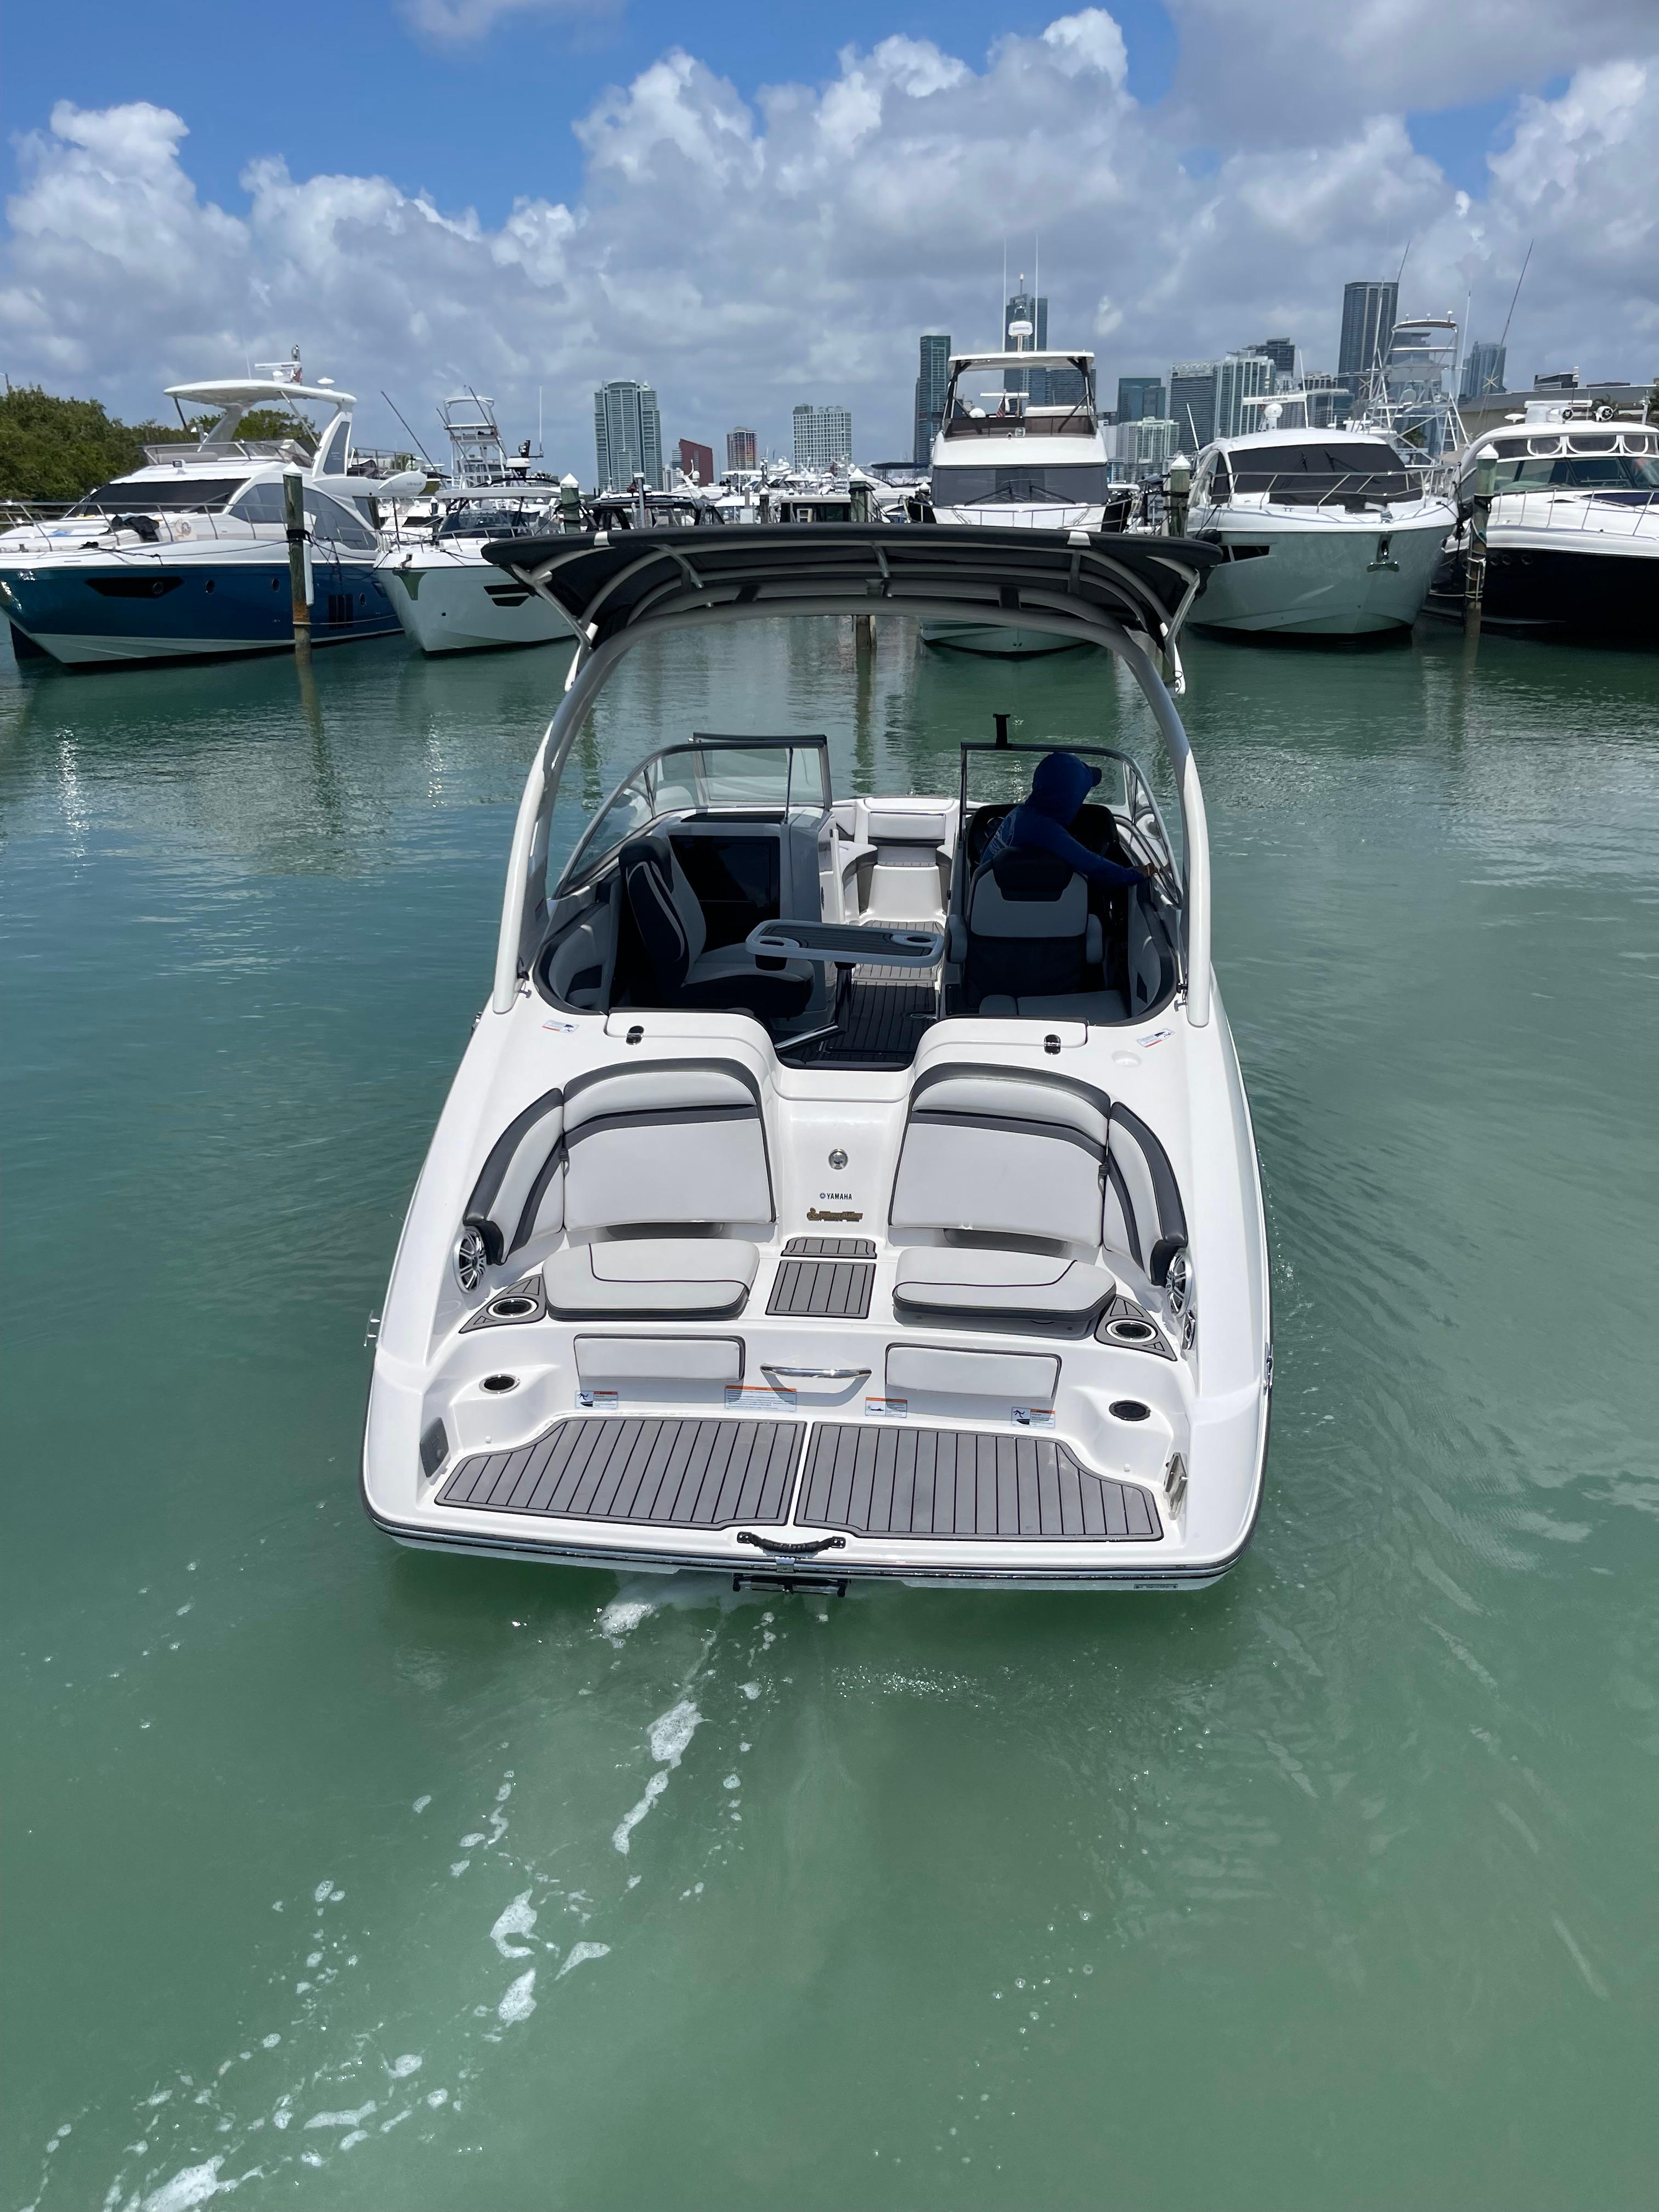 2017 Yamaha Boats 242 Limited S